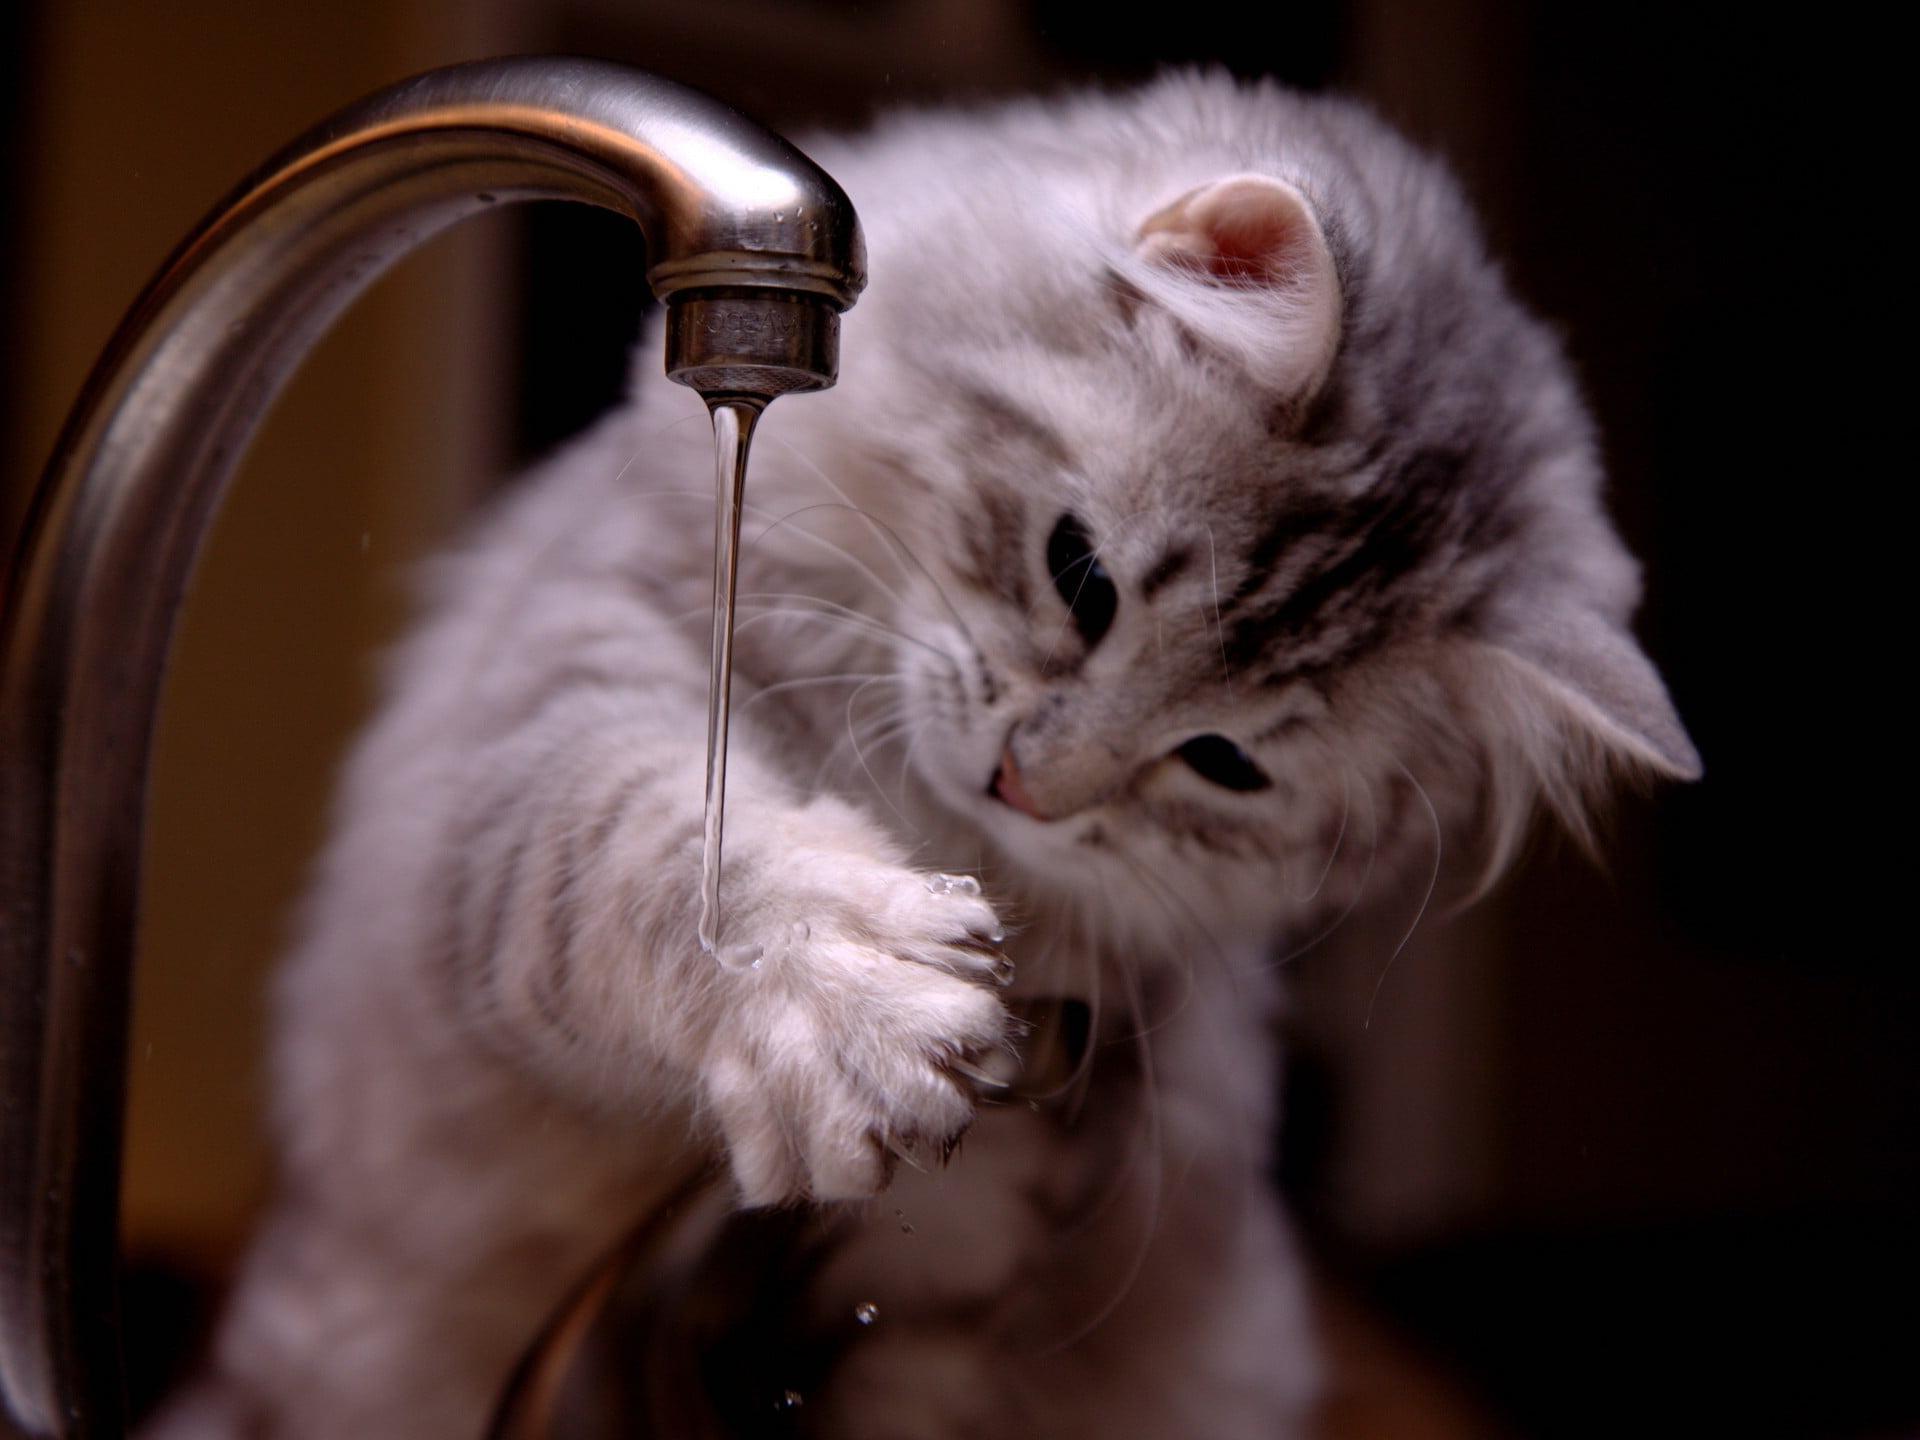 Hình ảnh chú mèo con đang nghịch nước trông rất đáng yêu